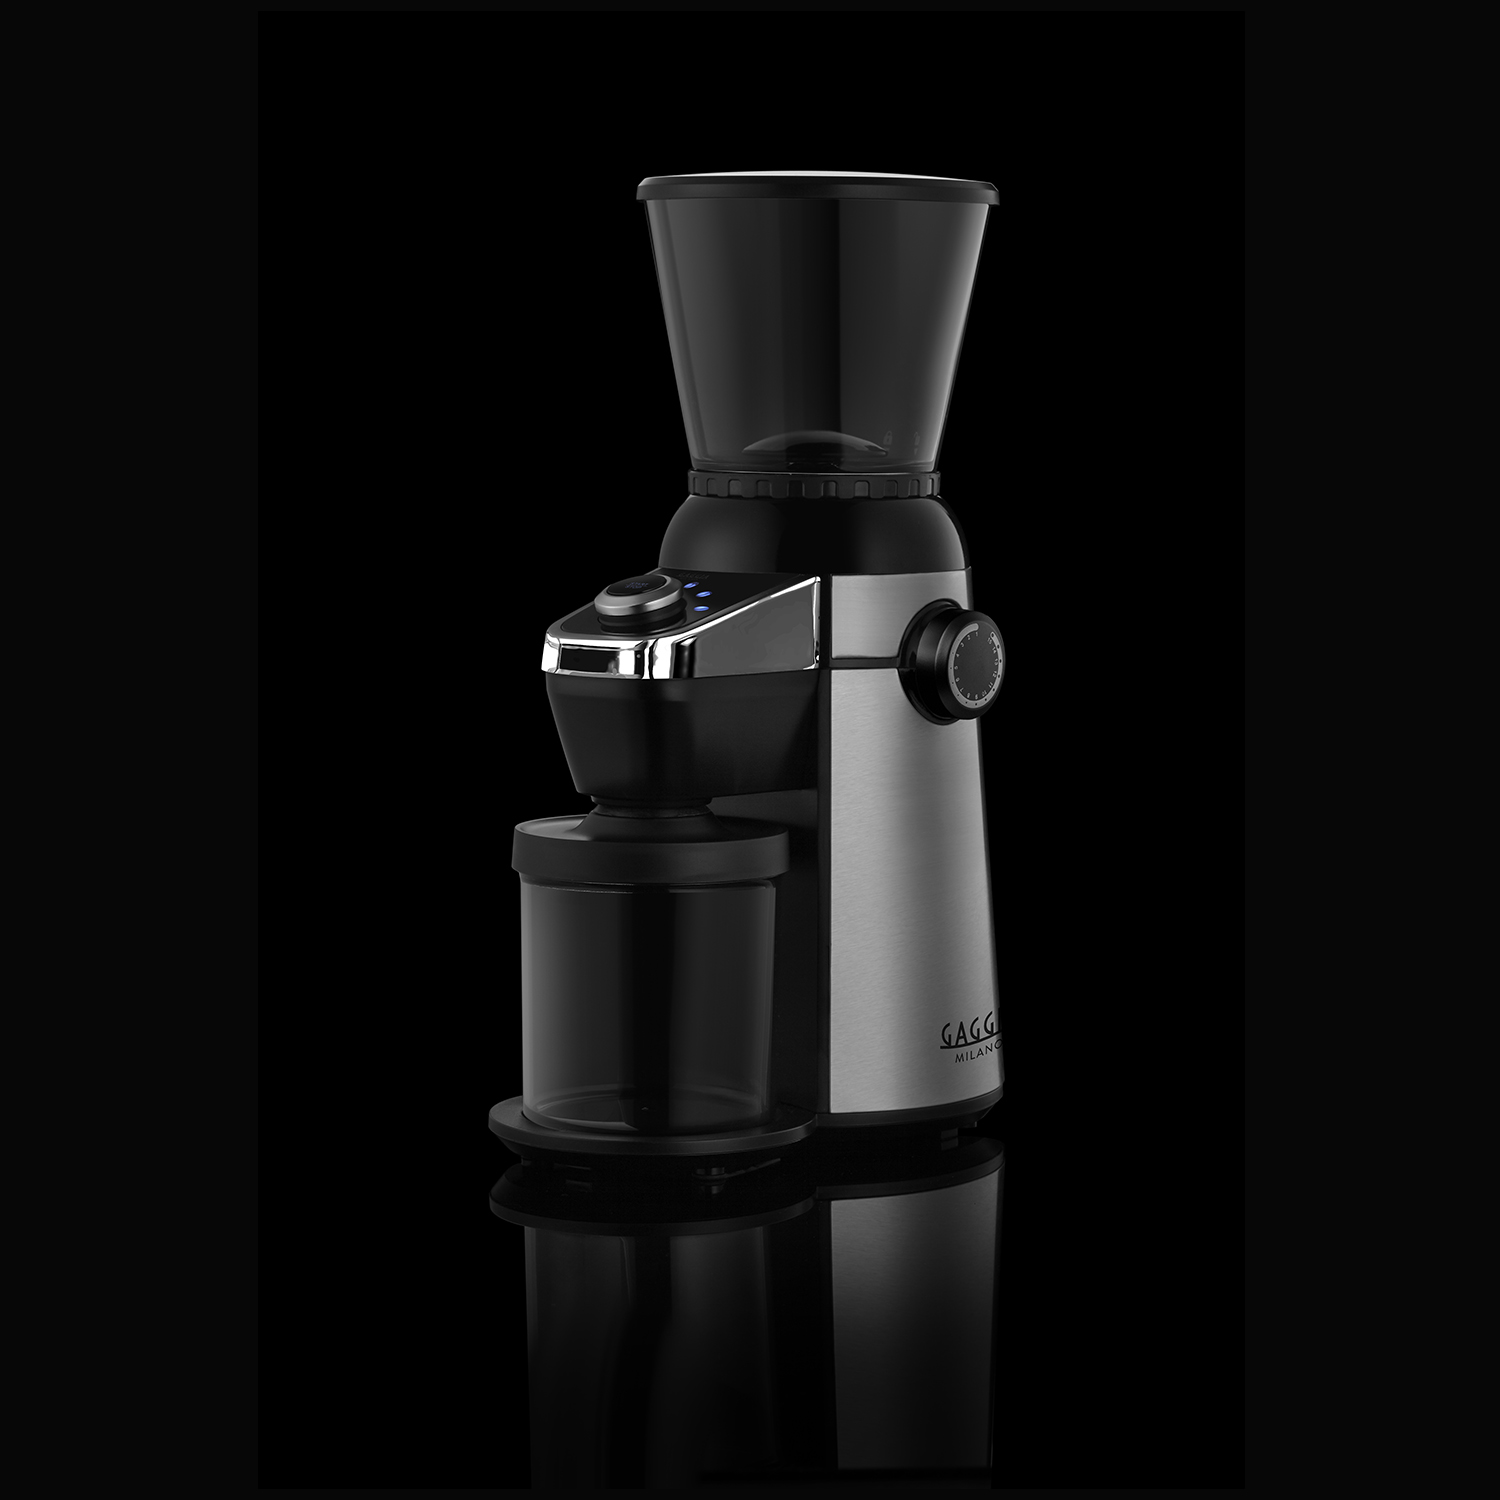 Molino de café modelo MD15